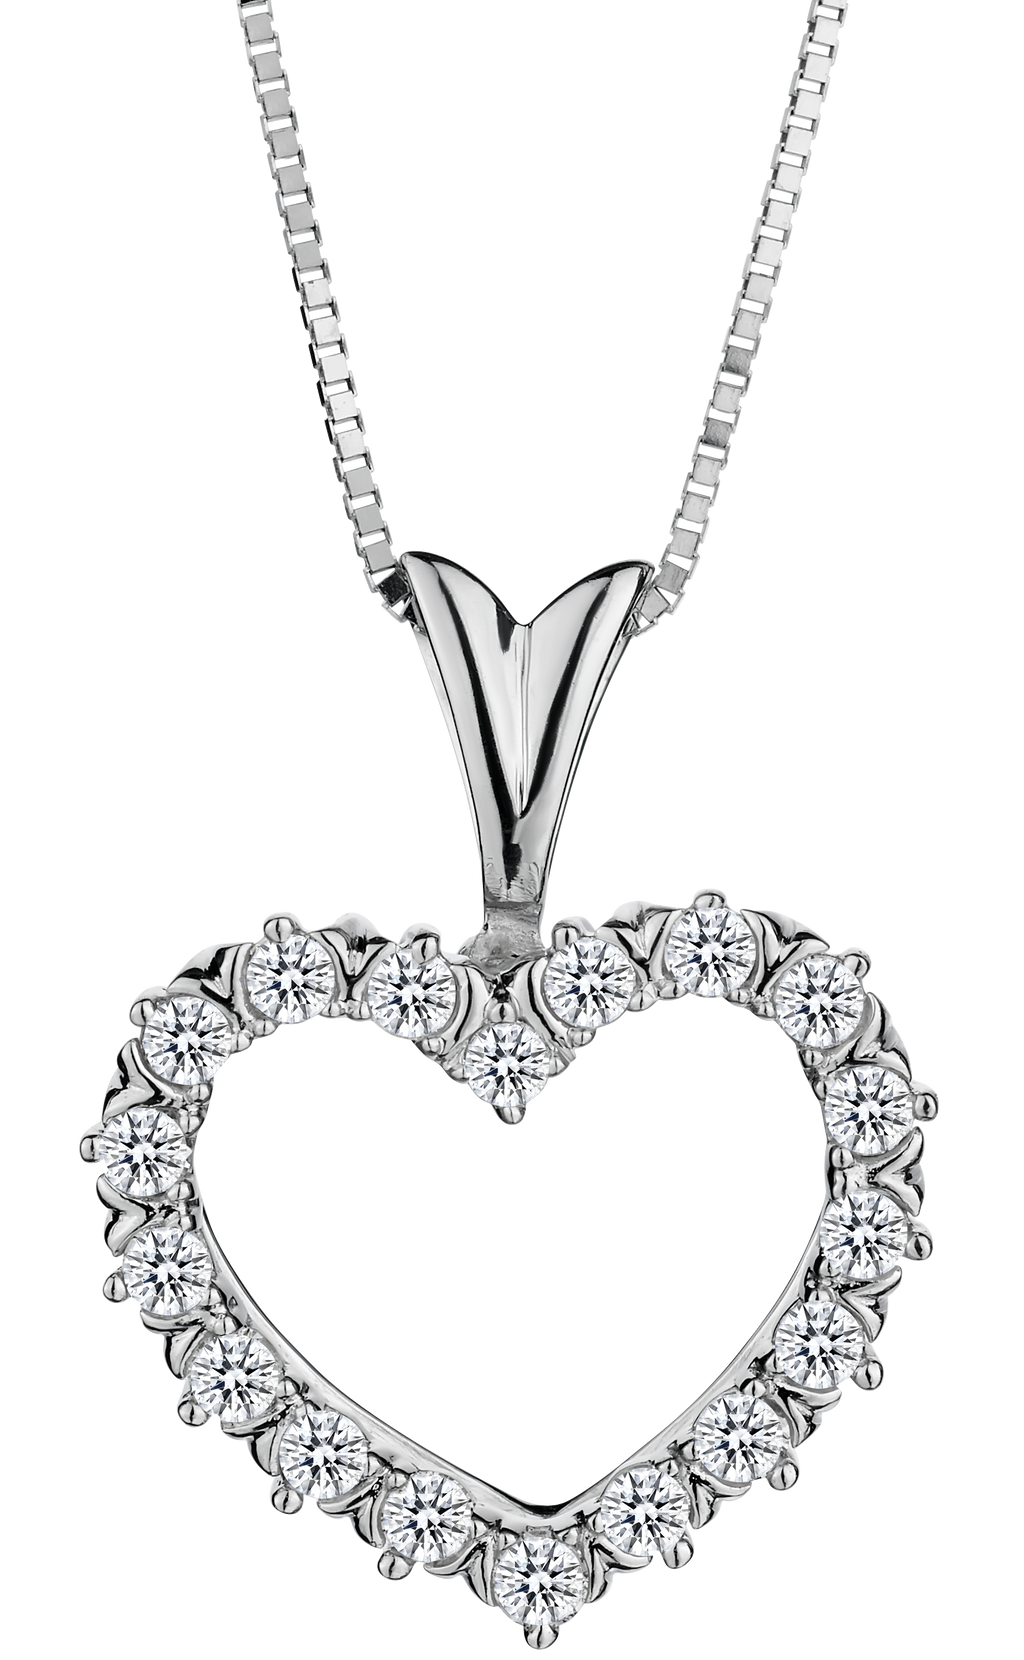 25 Carat of Diamonds Heart Pendant